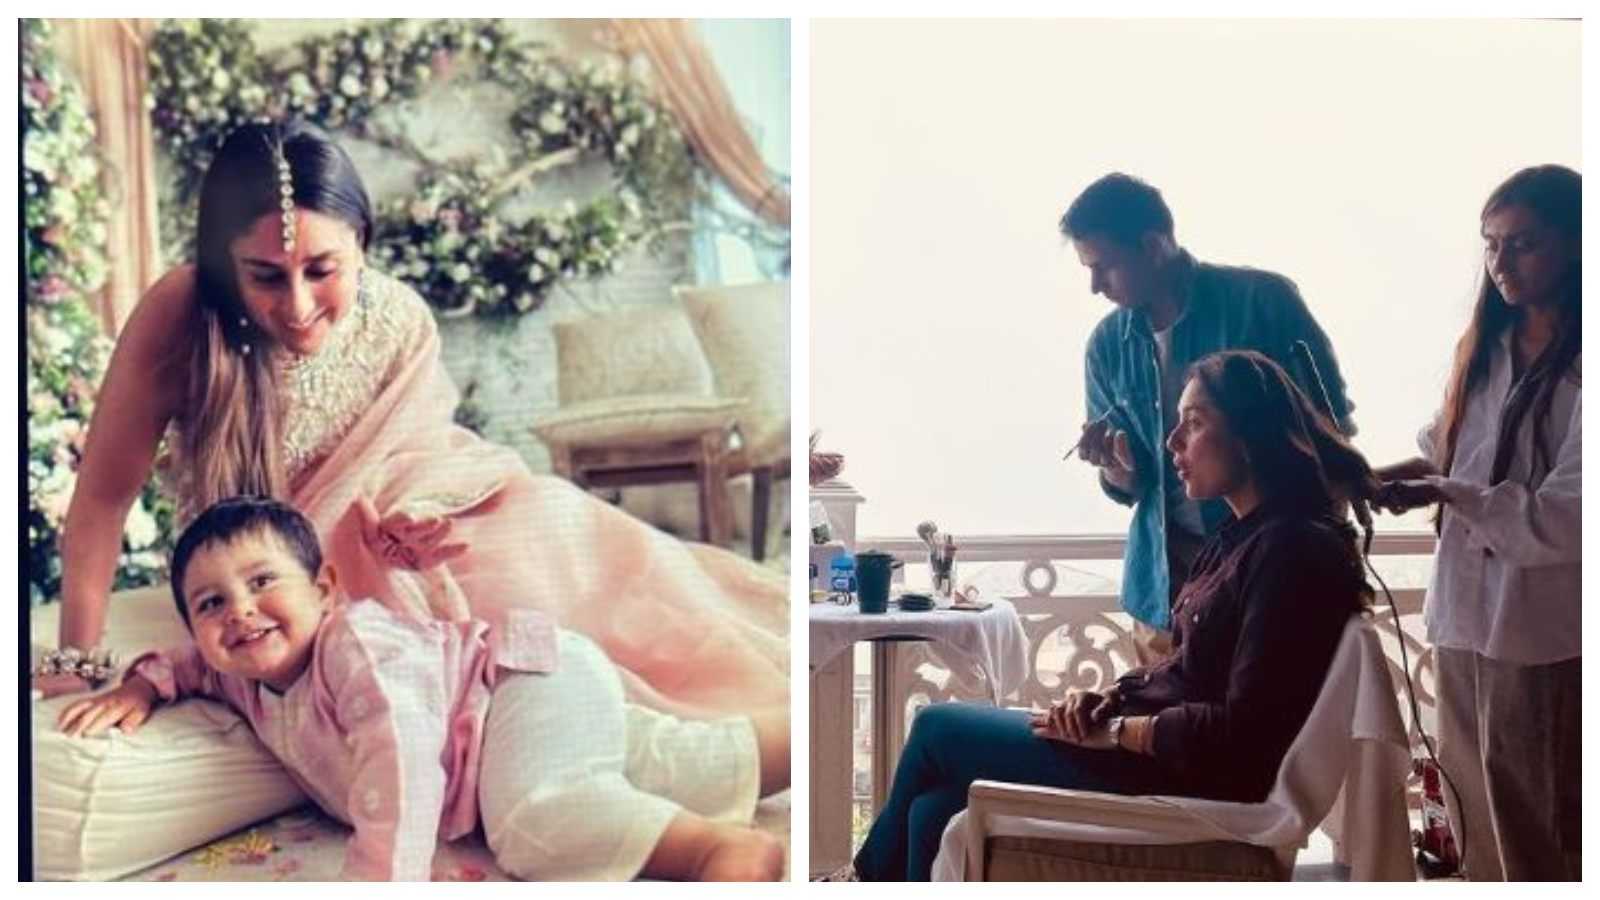 करीना कपूर ने बेटे जेह के साथ शेयर की ये तस्वीर, एक्ट्रेस के एक्सप्रेशन ने इस तरह से खींचा सबका ध्यान